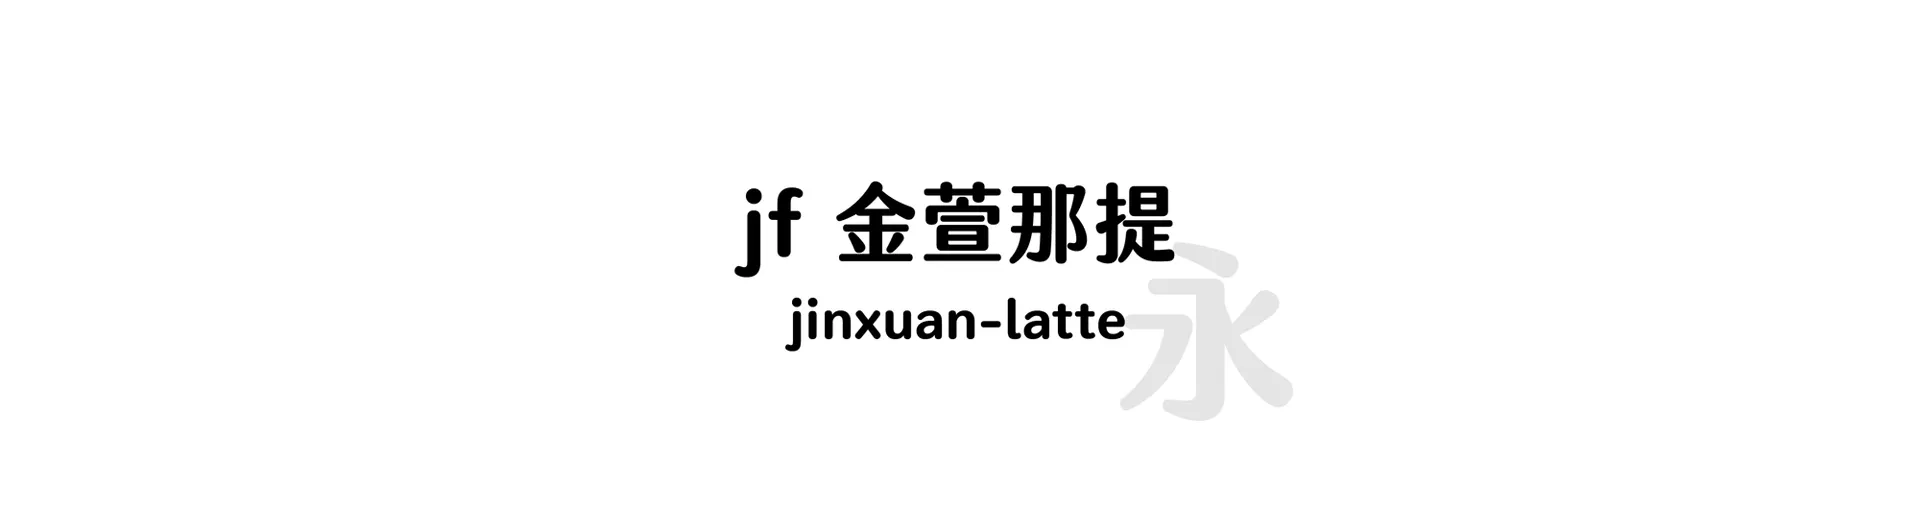 jinxuan-latte